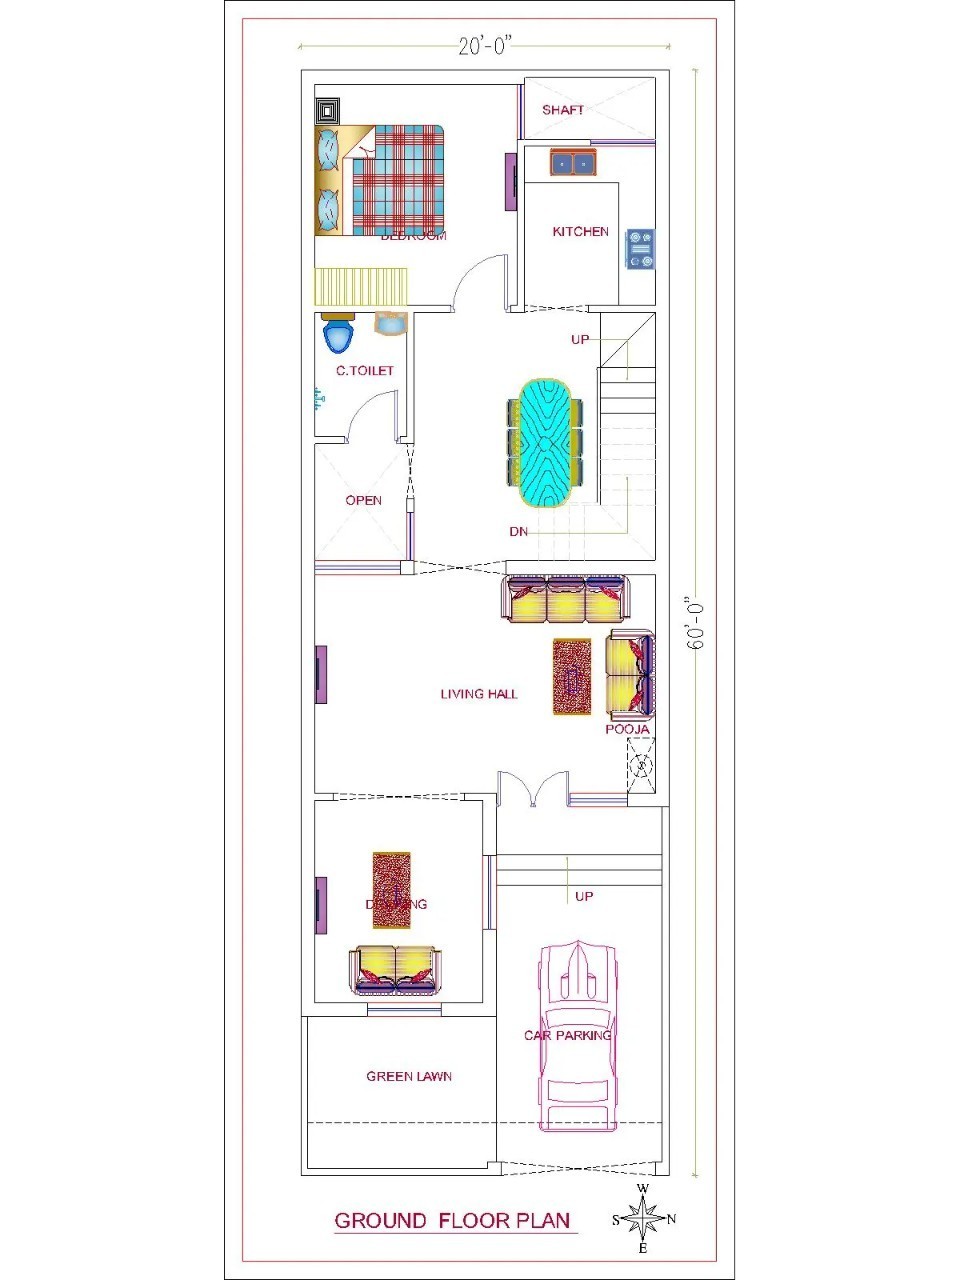 20x60 Ground Floor Plan